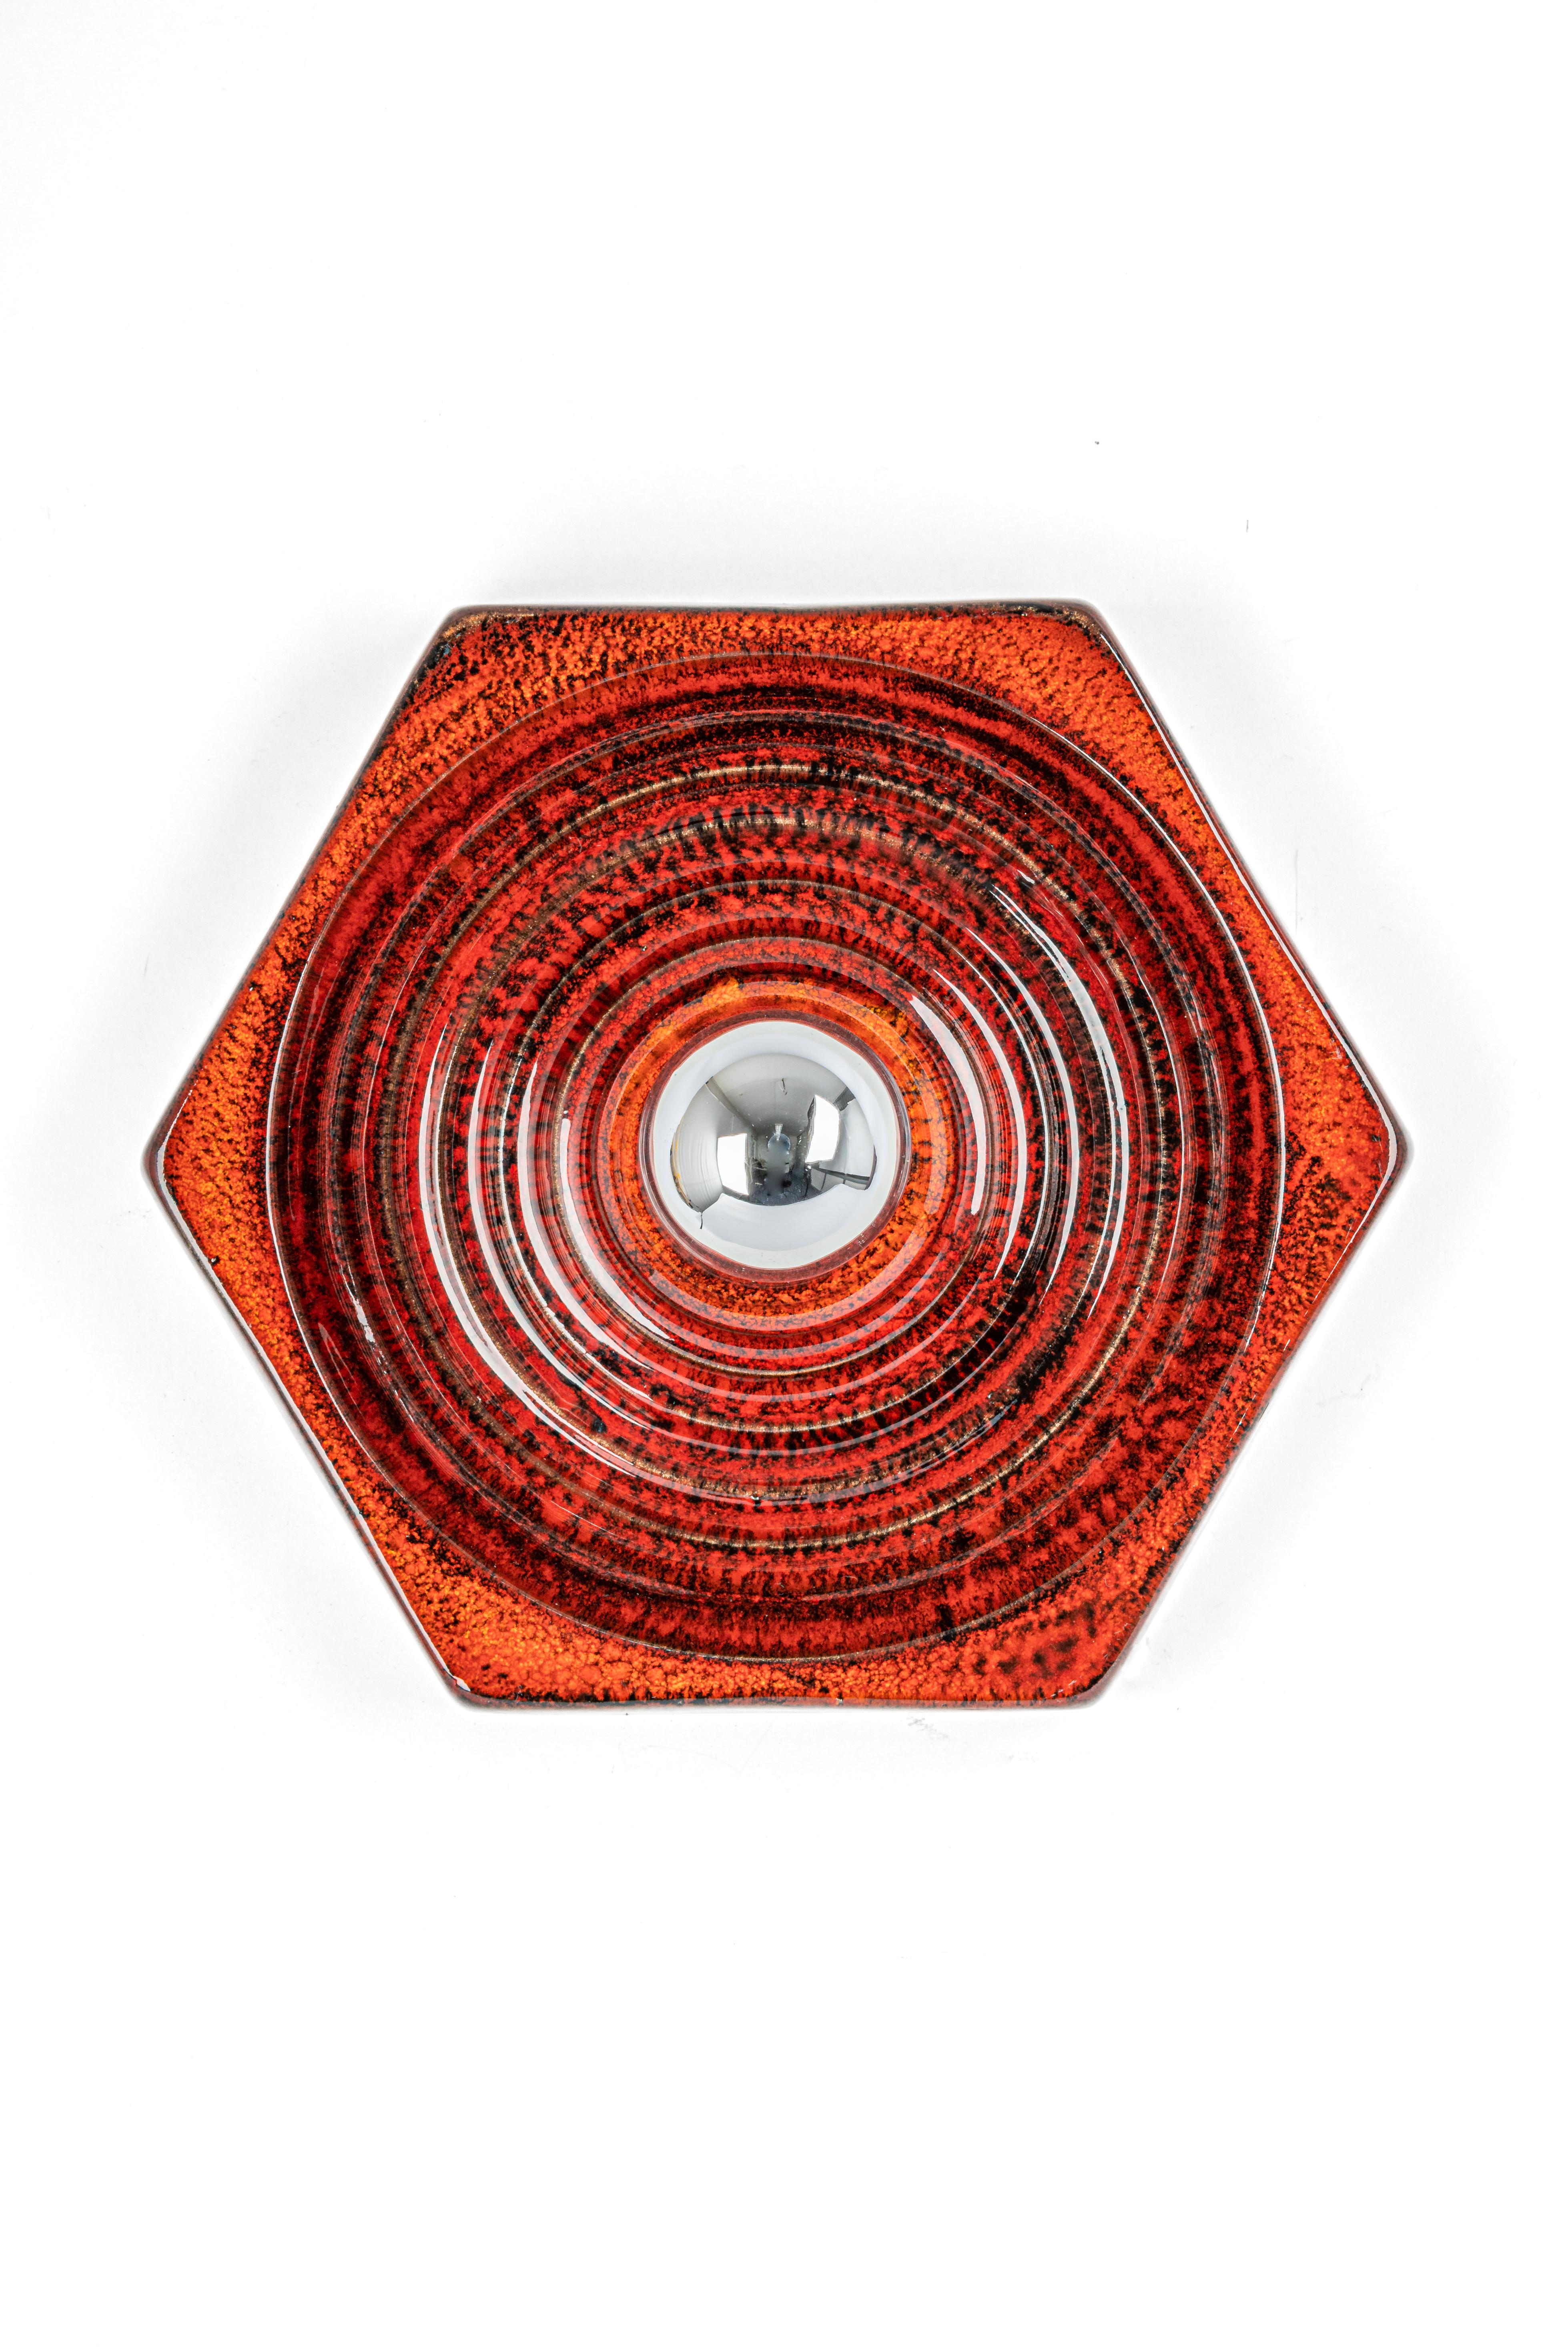 1 von 8 Keramische rote und orange Wandleuchte Sputnik Deutschland 1970er
Schwere Qualität und in sehr gutem Zustand. Gereinigt, gut verkabelt und einsatzbereit. 

Die Wandleuchte benötigt 1 x E27 Standard-Glühbirne mit je max. 40W.
Glühbirnen